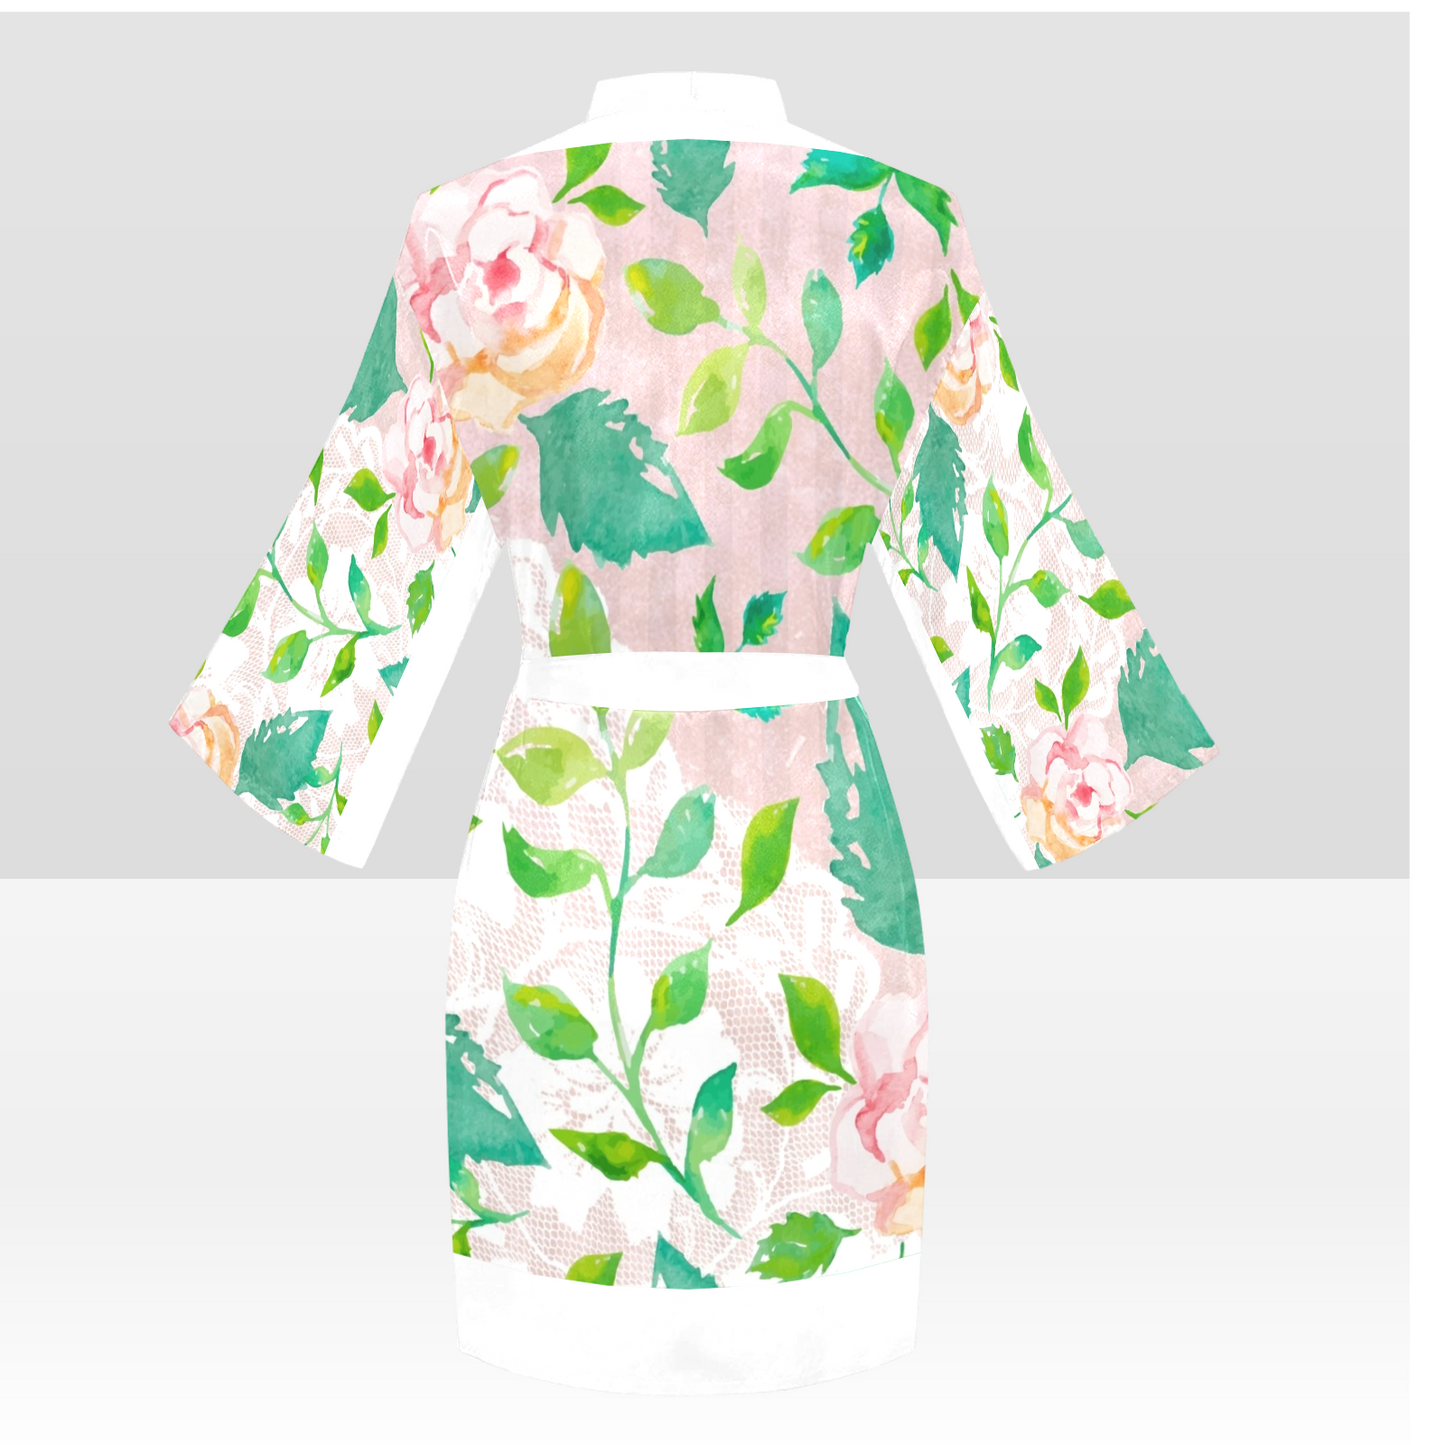 Victorian Lace Kimono Robe, Black or White Trim, Sizes XS to 2XL, Design 21